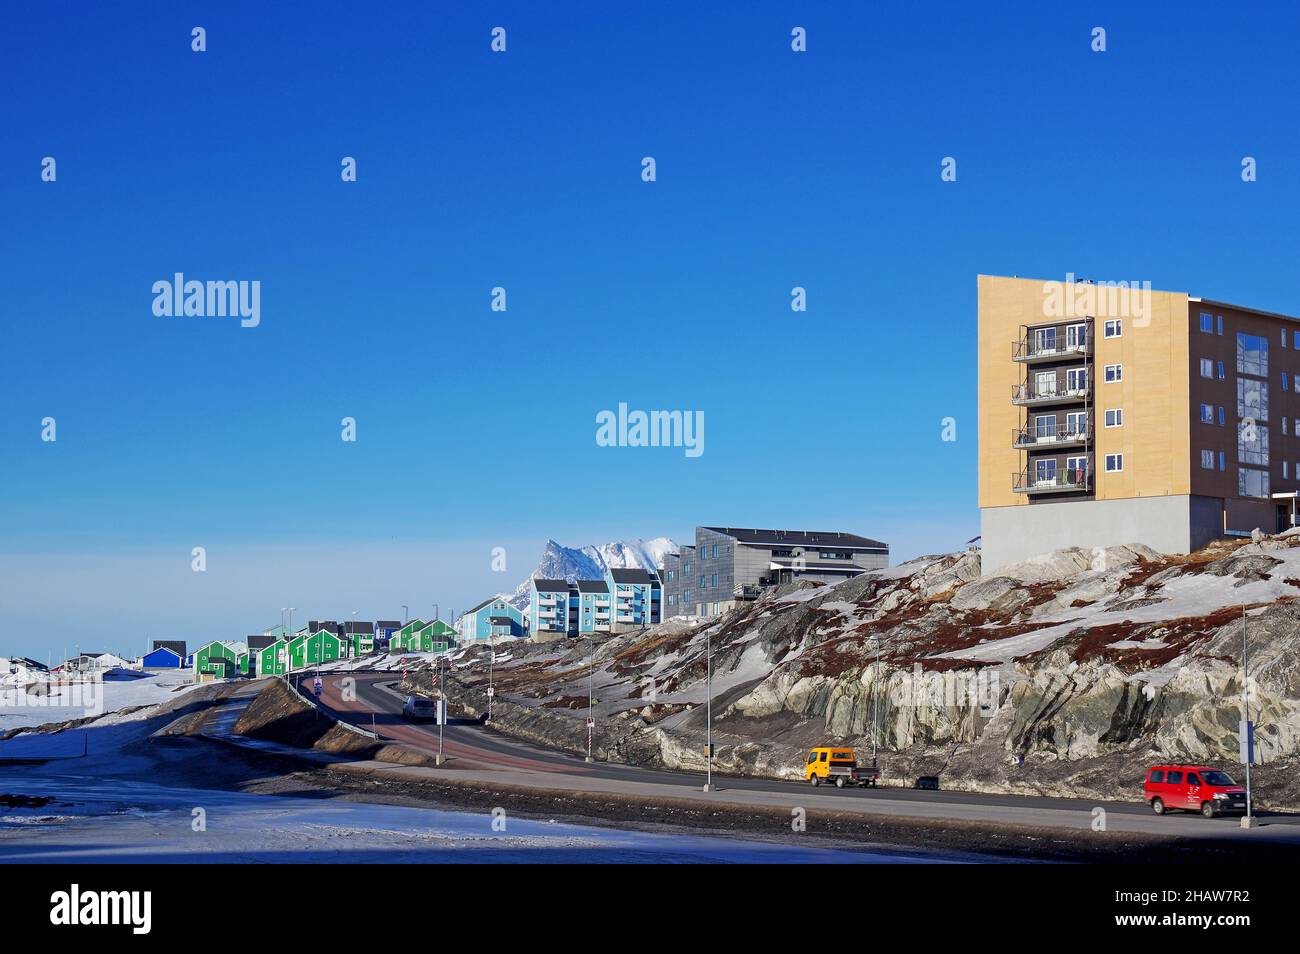 Rue, immeubles et rudes, paysage de montagne enneigé, capitale, Nuuk, Arctique,Amérique du Nord, Groenland, Danemark Banque D'Images